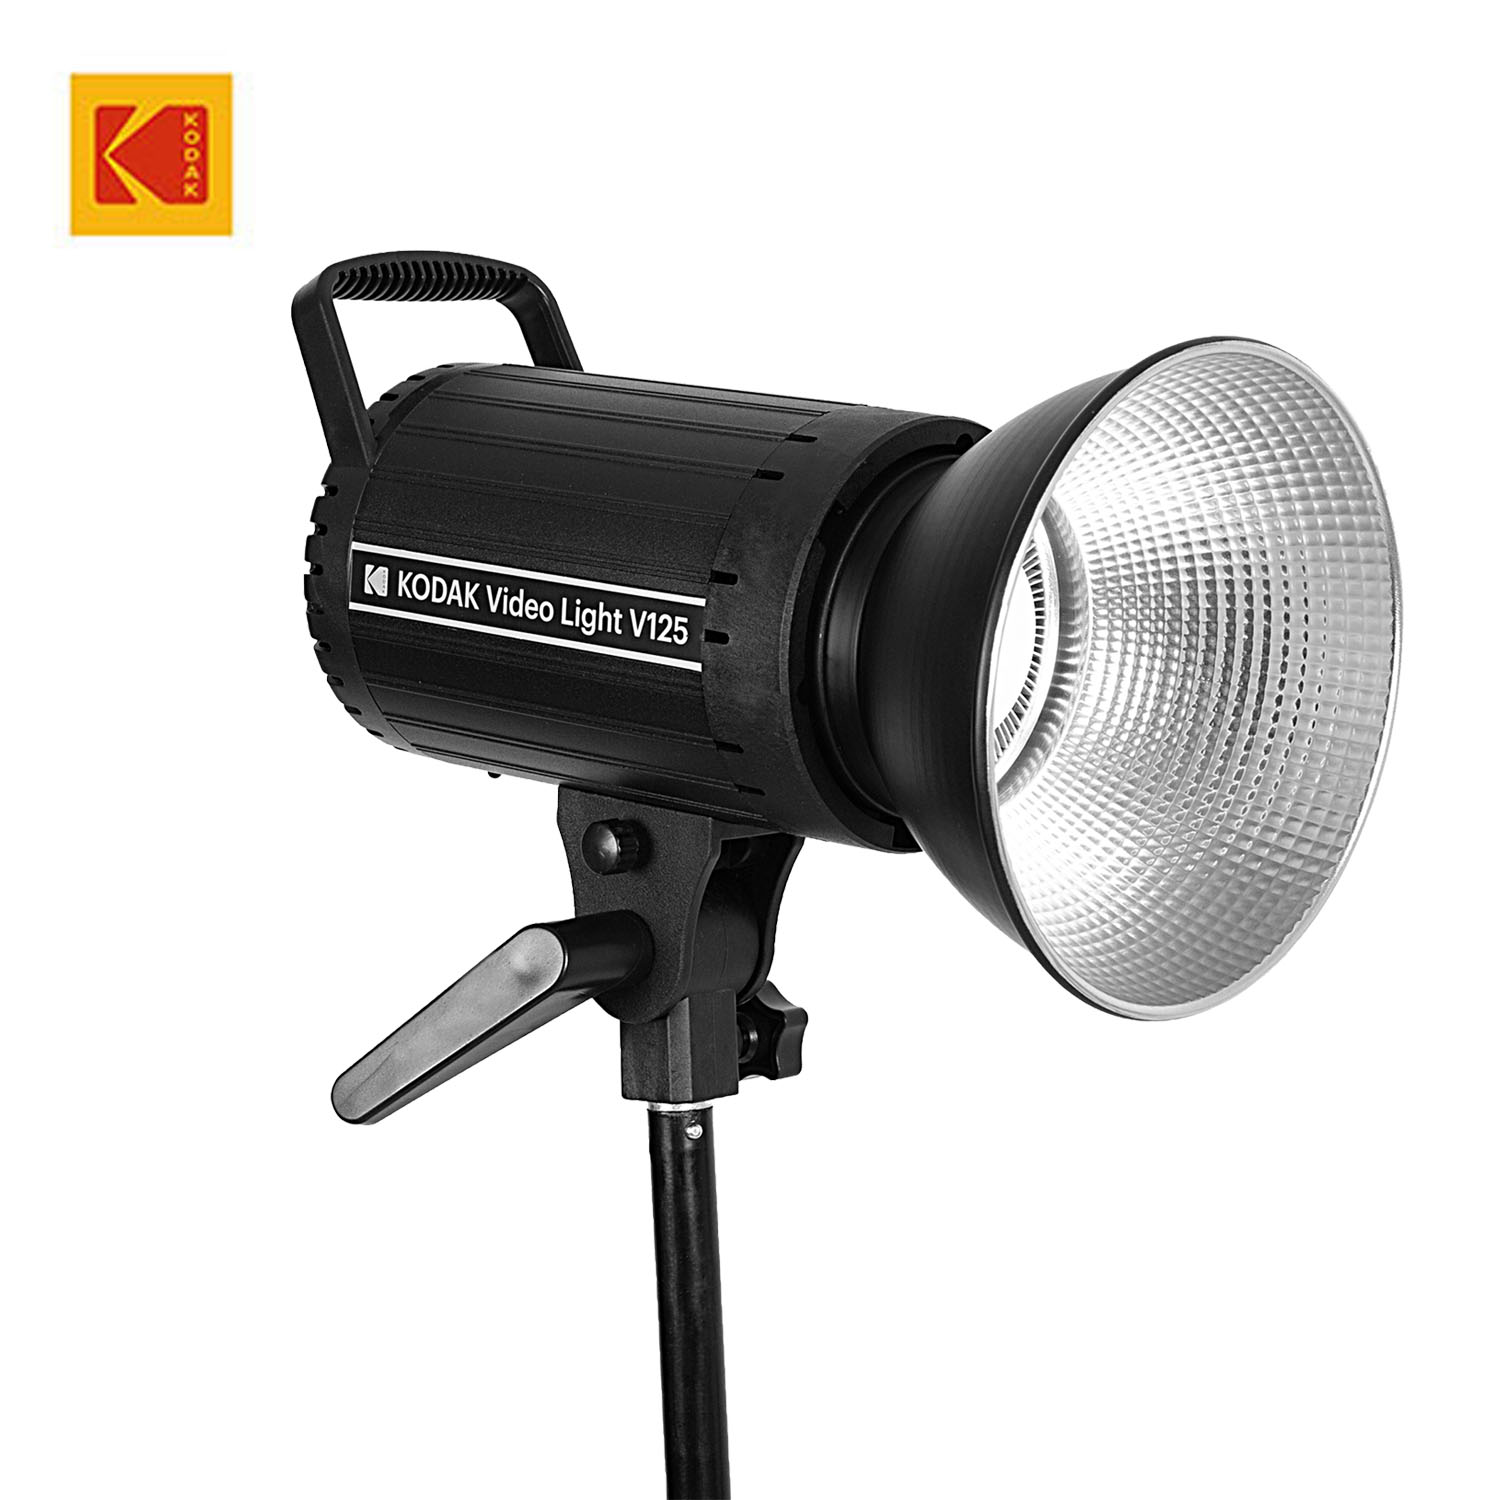 KODAK Video Light V125